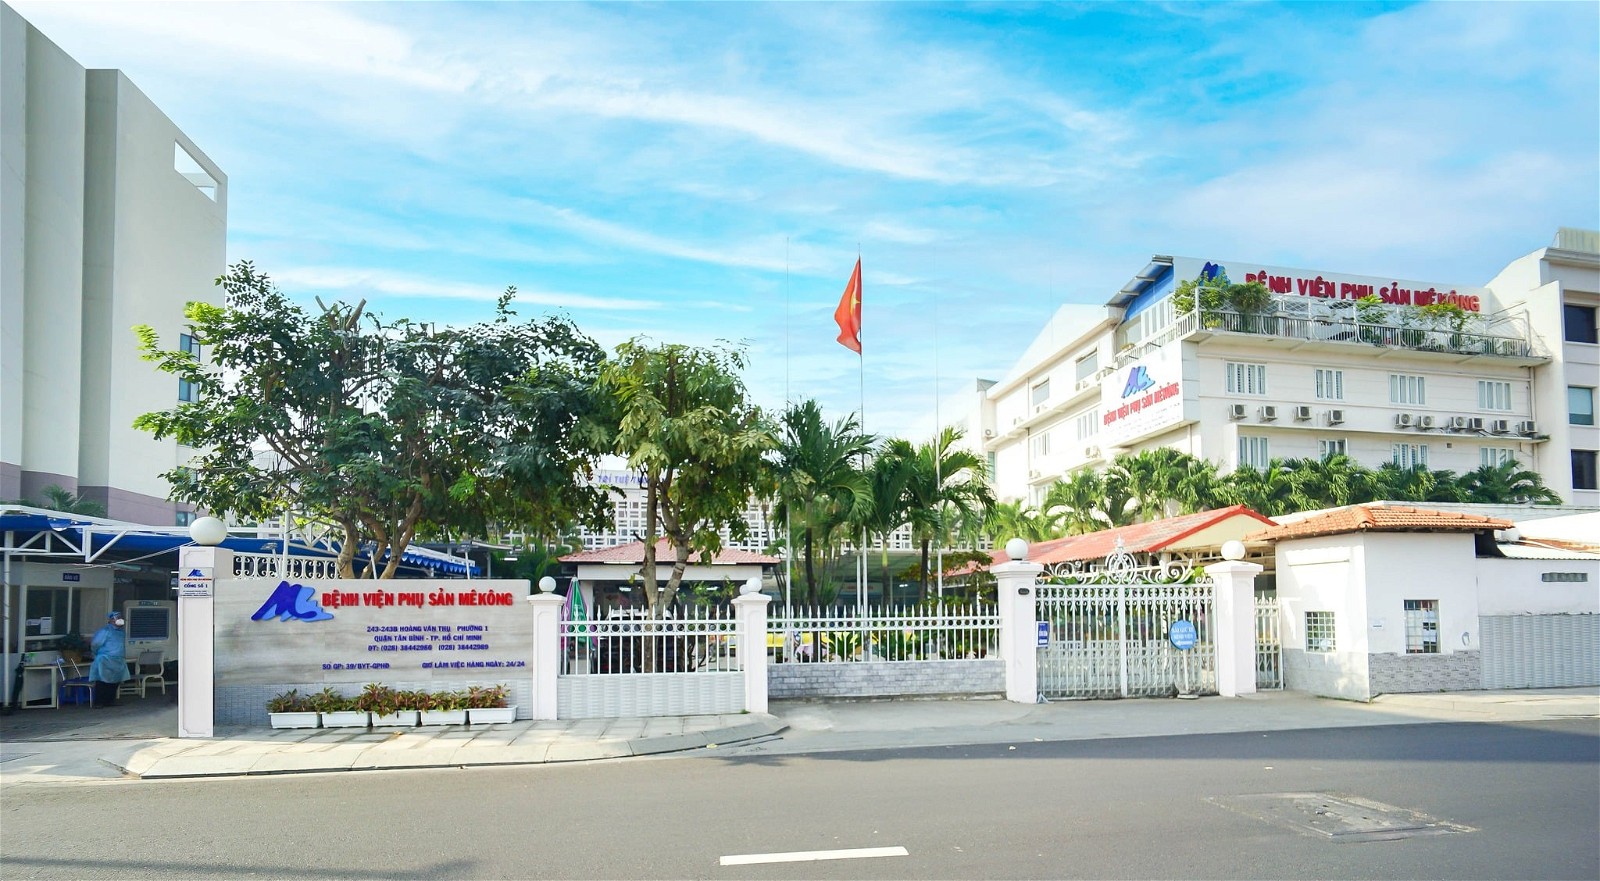 Bệnh viện Phụ sản Mêkông là bệnh viện chuyên khoa sâu về Sản - Phụ khoa và Nhi sơ sinh